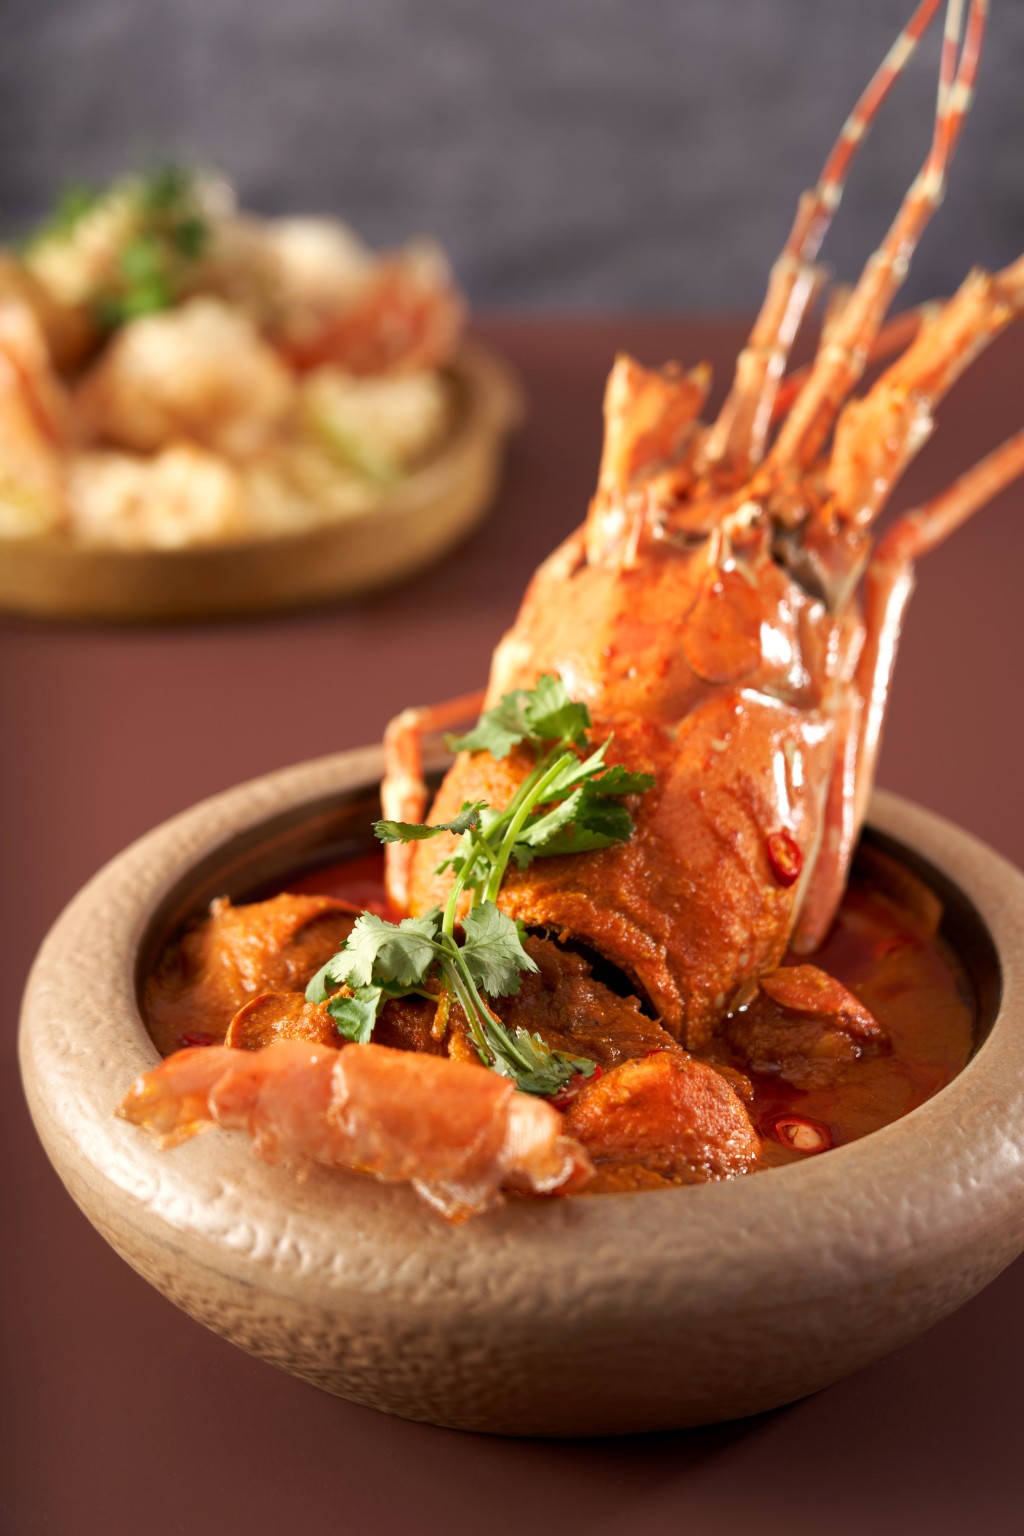 唯港薈 The Market「野生龍蝦自助餐饗宴」——印度咖喱龍蝦，自家調校的印度咖喱具恰到好處的辛香，帶出龍蝦的甜美又不會蓋過其鮮味。